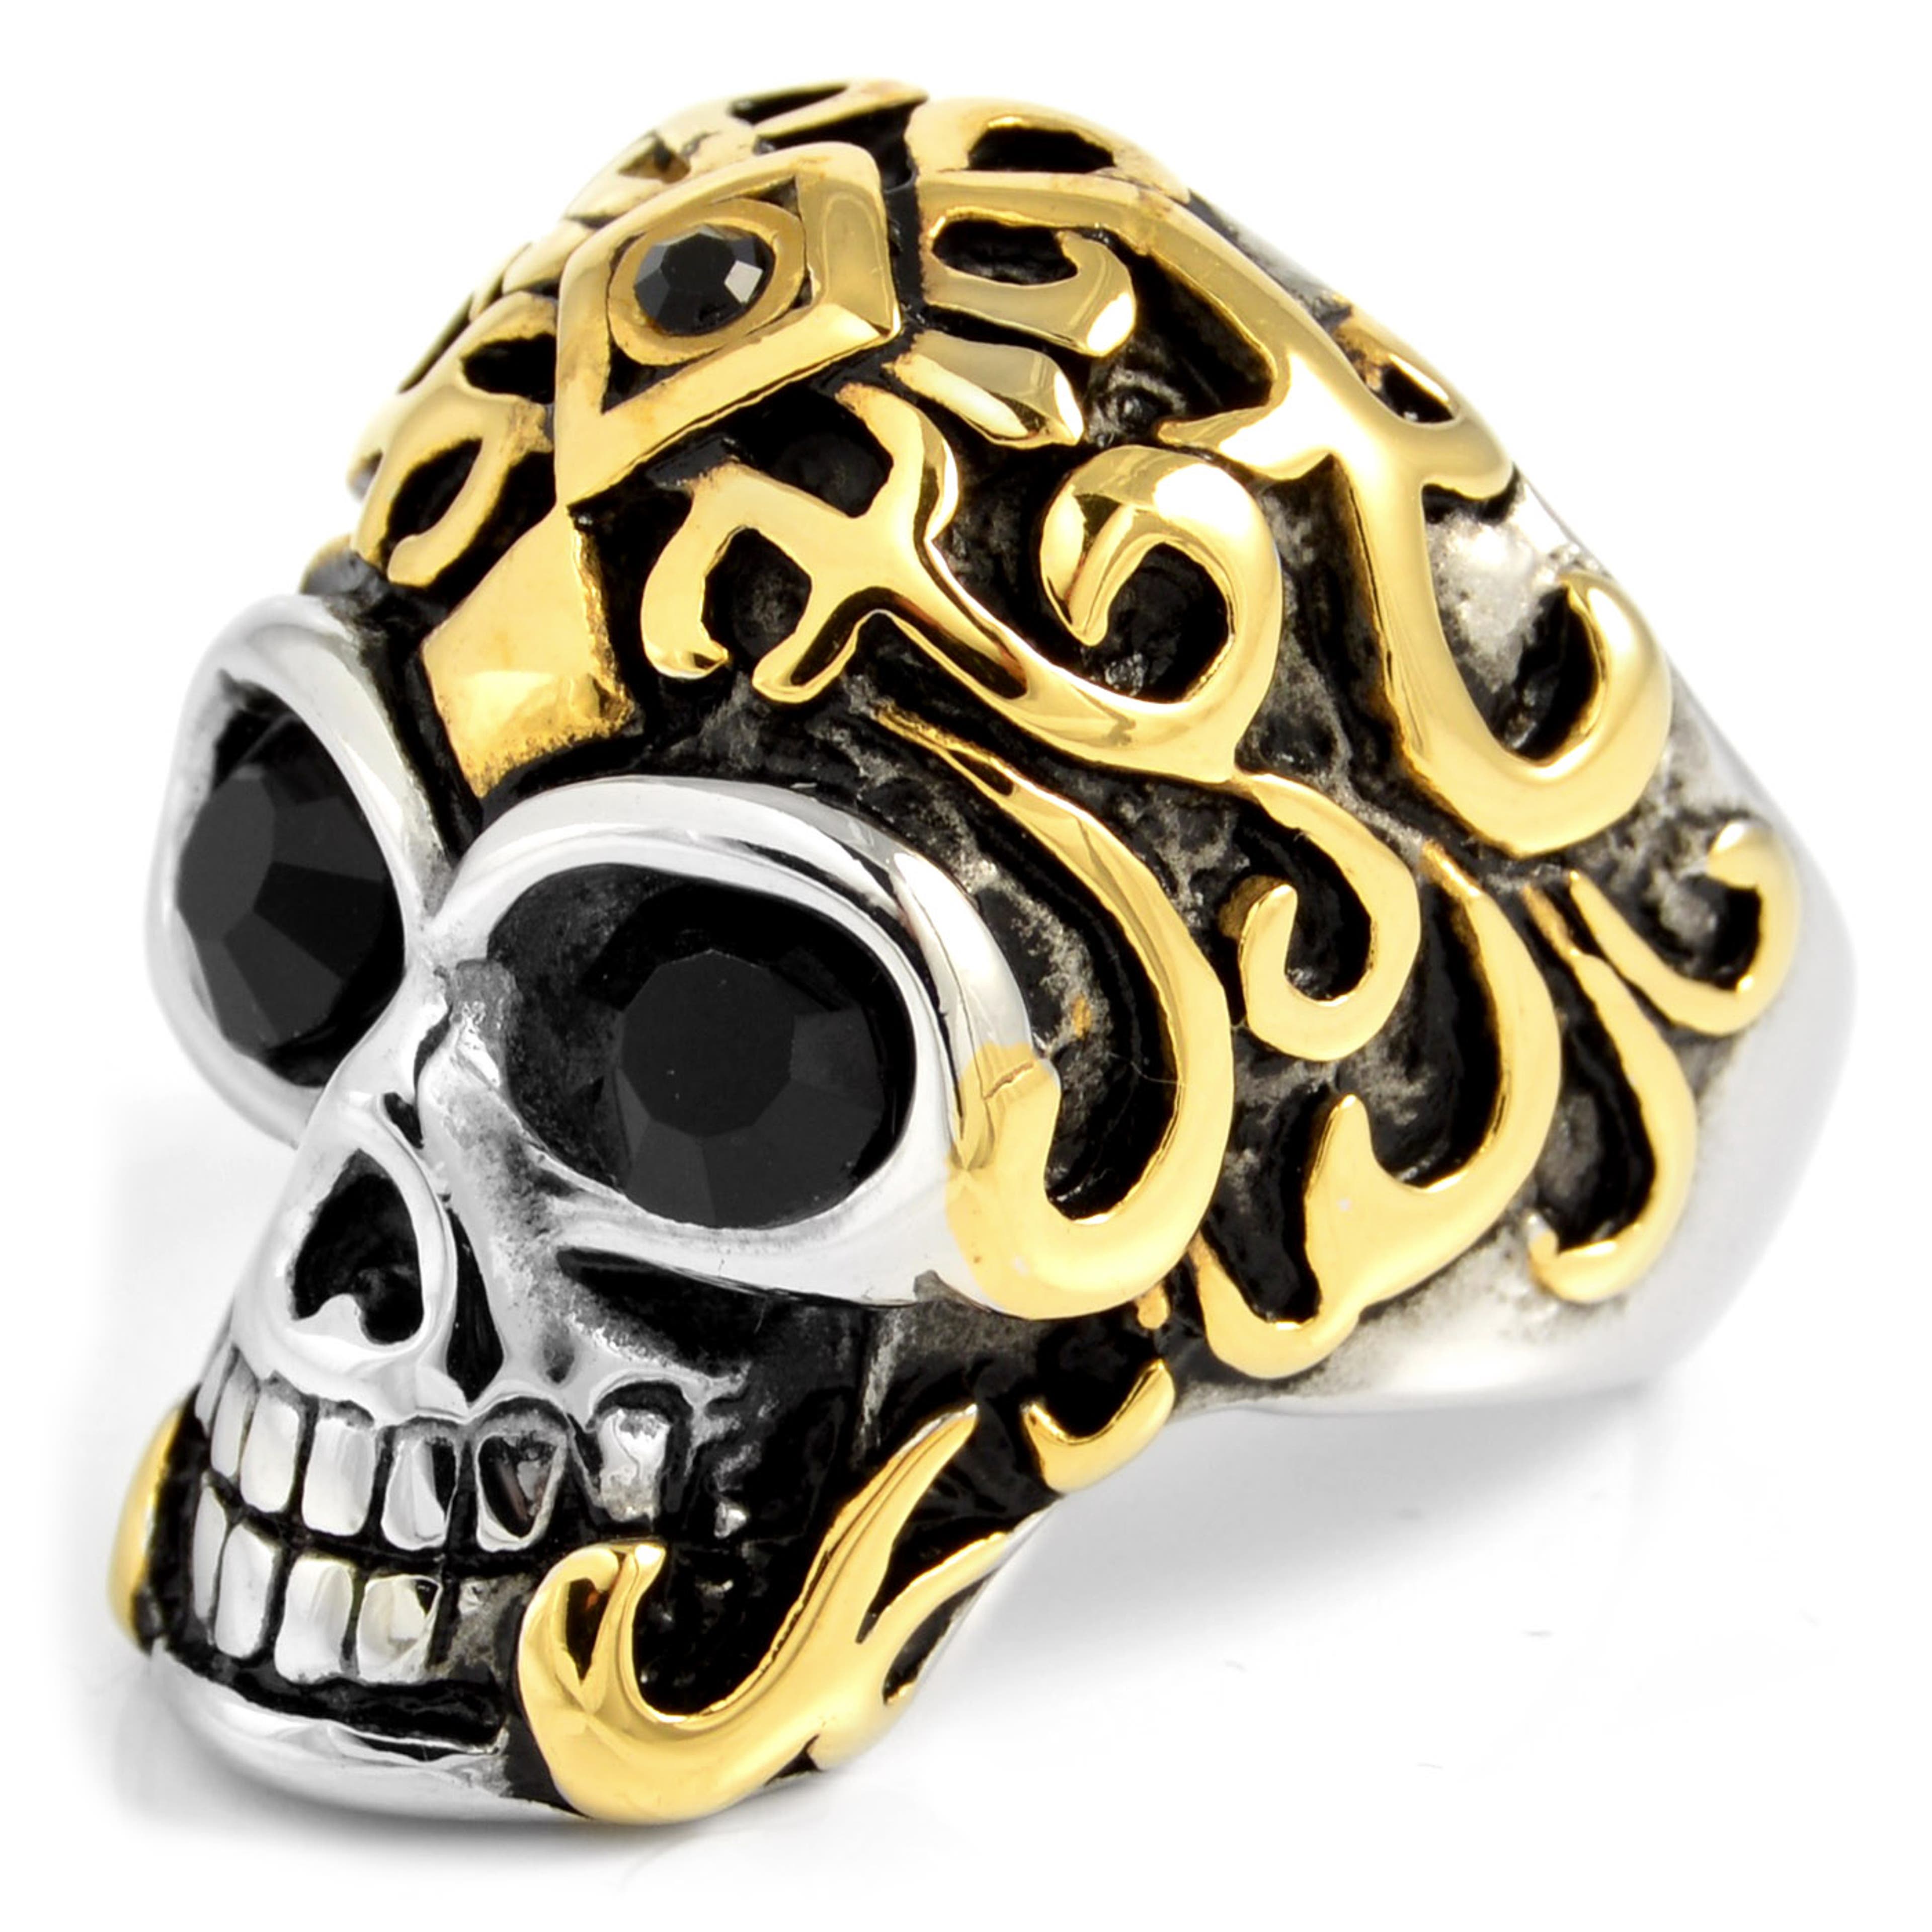 Arany tónusú koronás koponya acélgyűrű